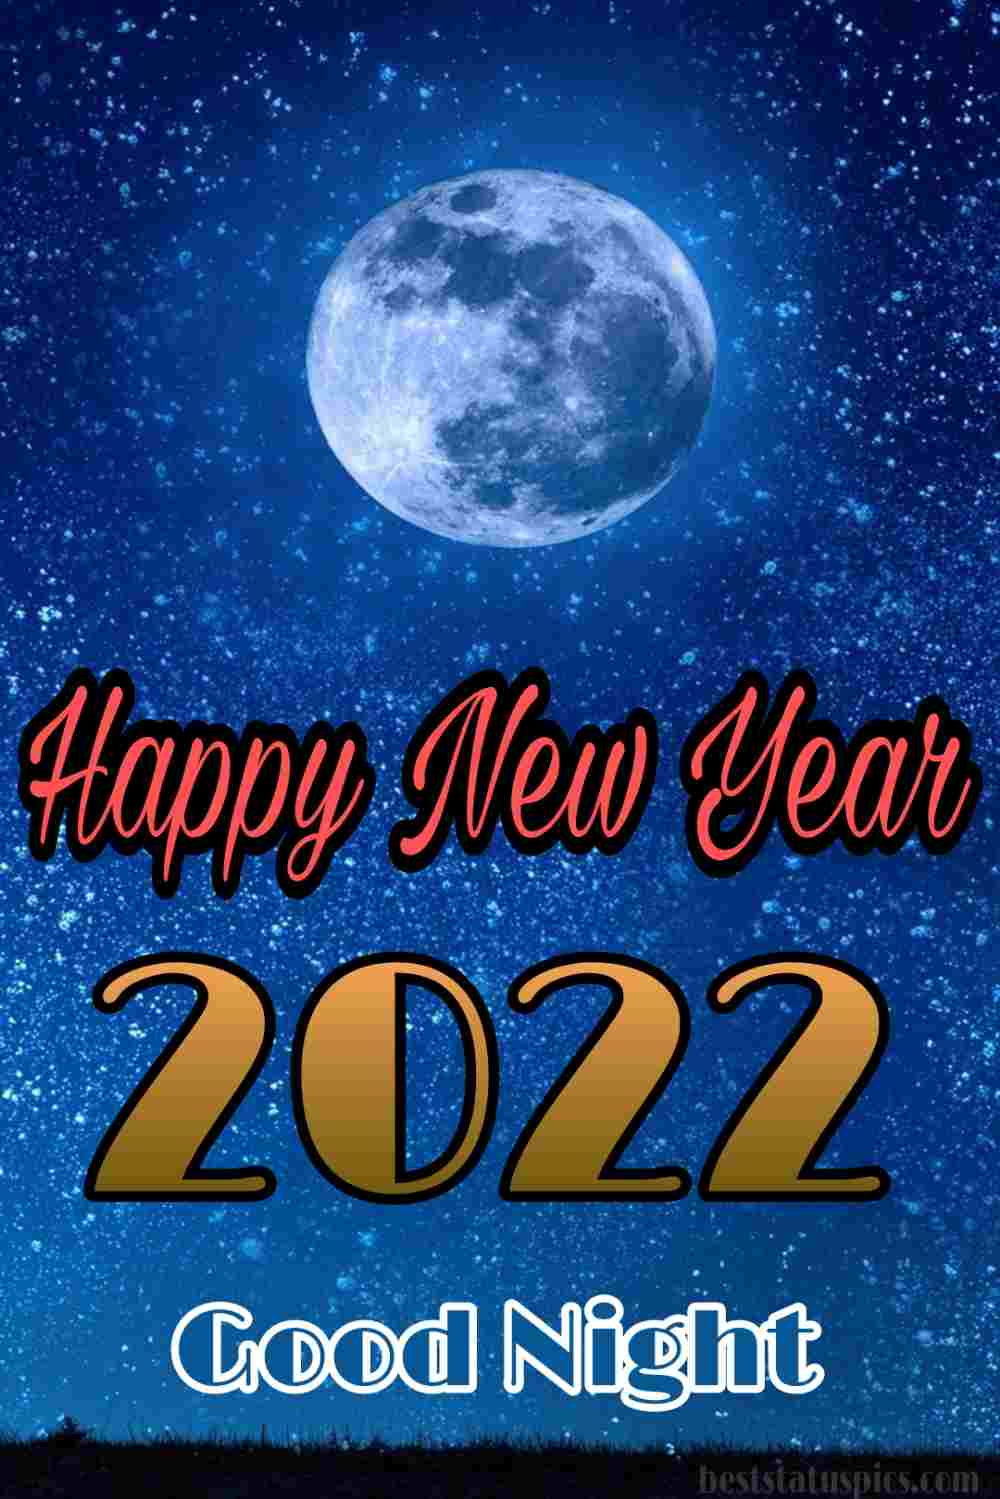 Felice anno nuovo 2022 e buona notte immagini HD con luna, stelle e cielo notturno per il migliore amico e amante